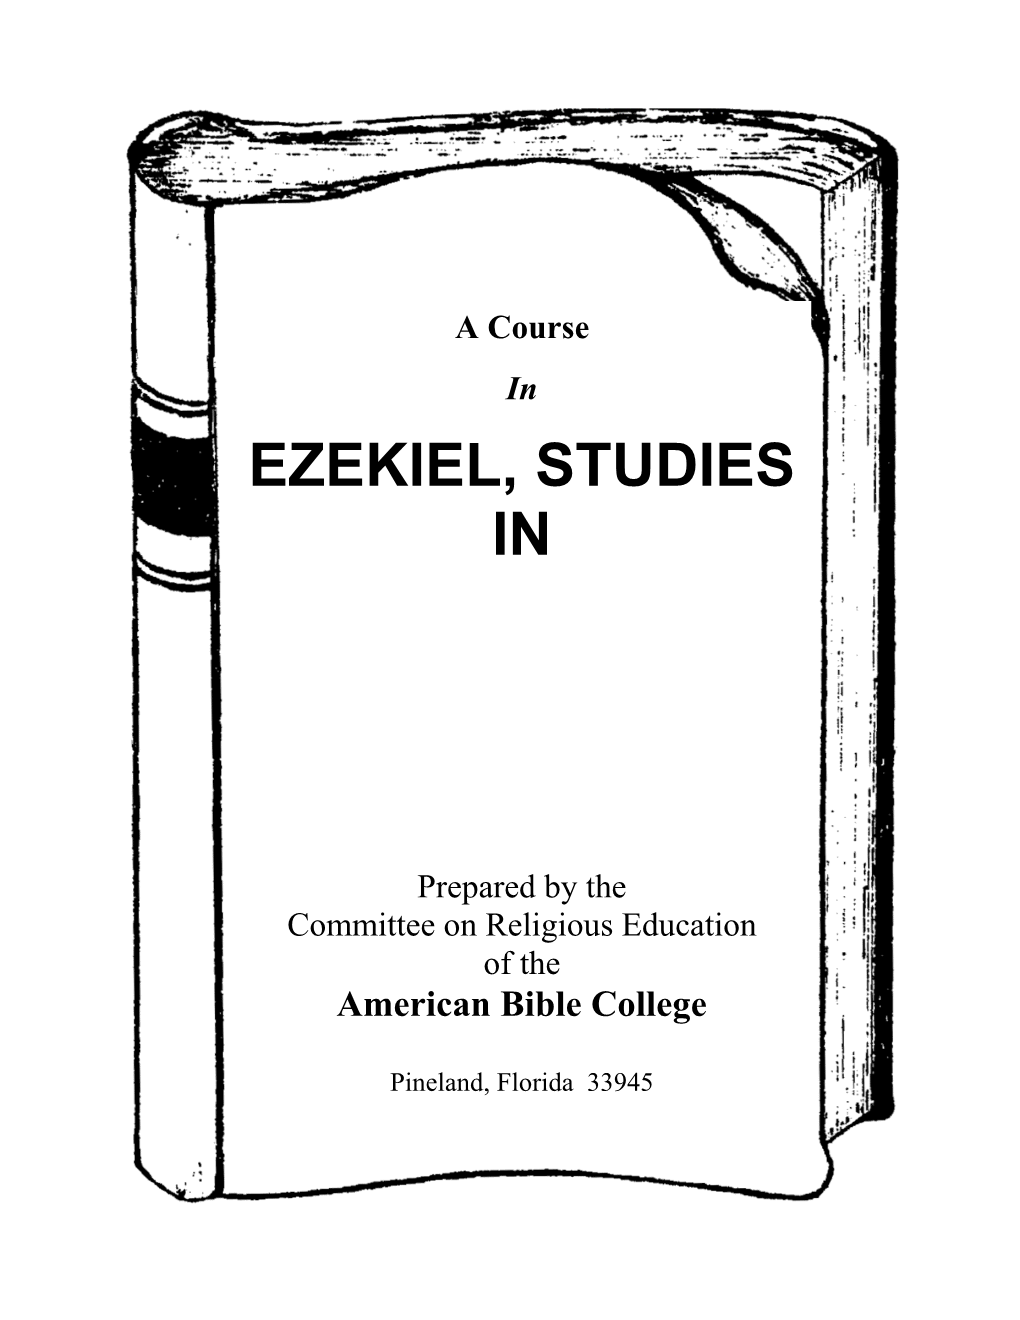 Studies in Ezekiel